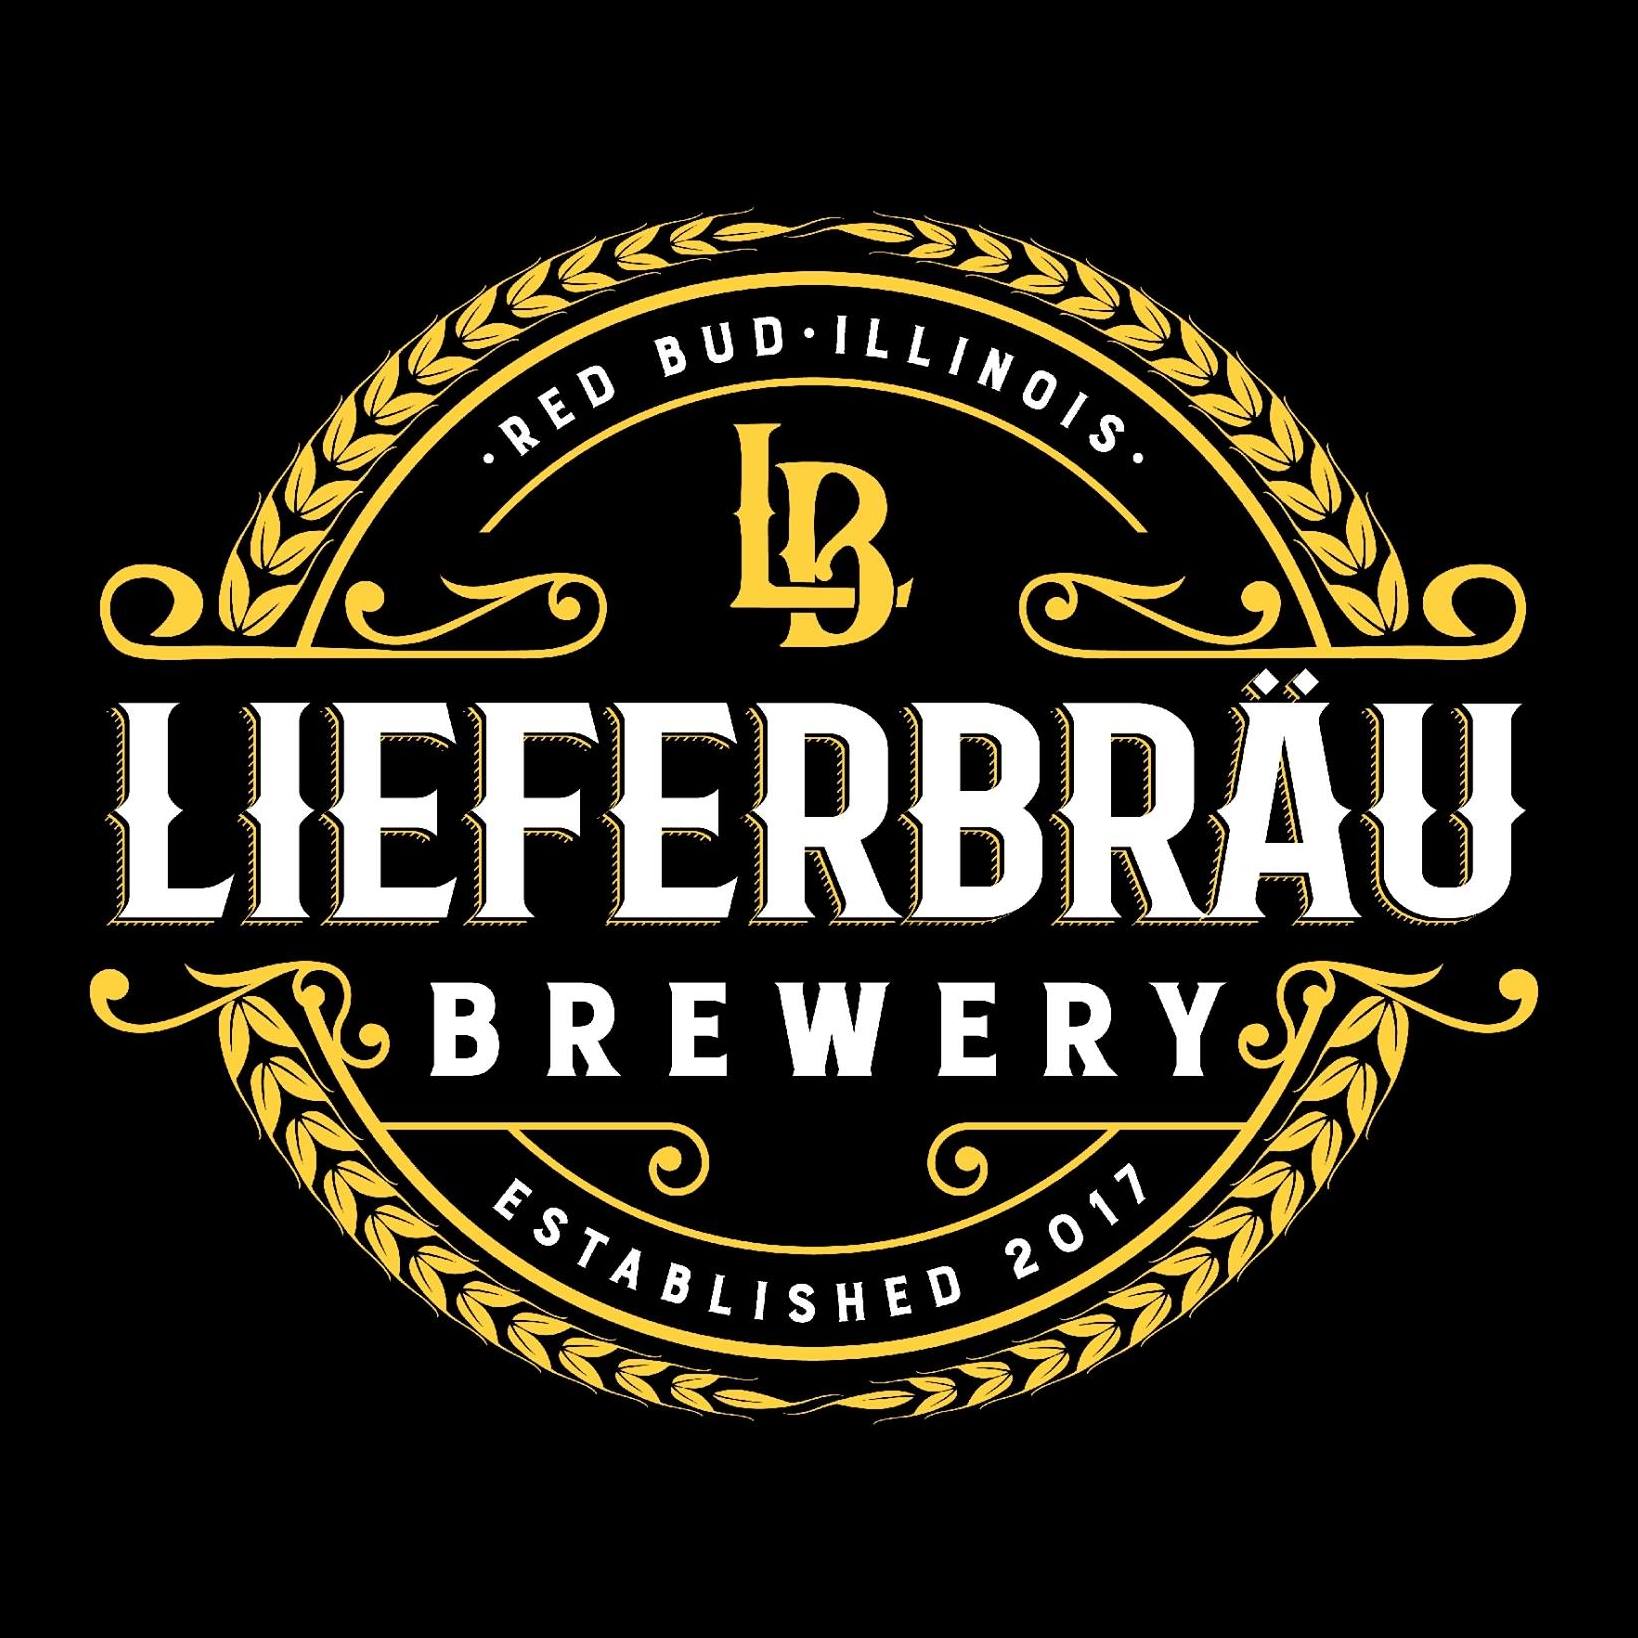 Lieferbrau Brewery